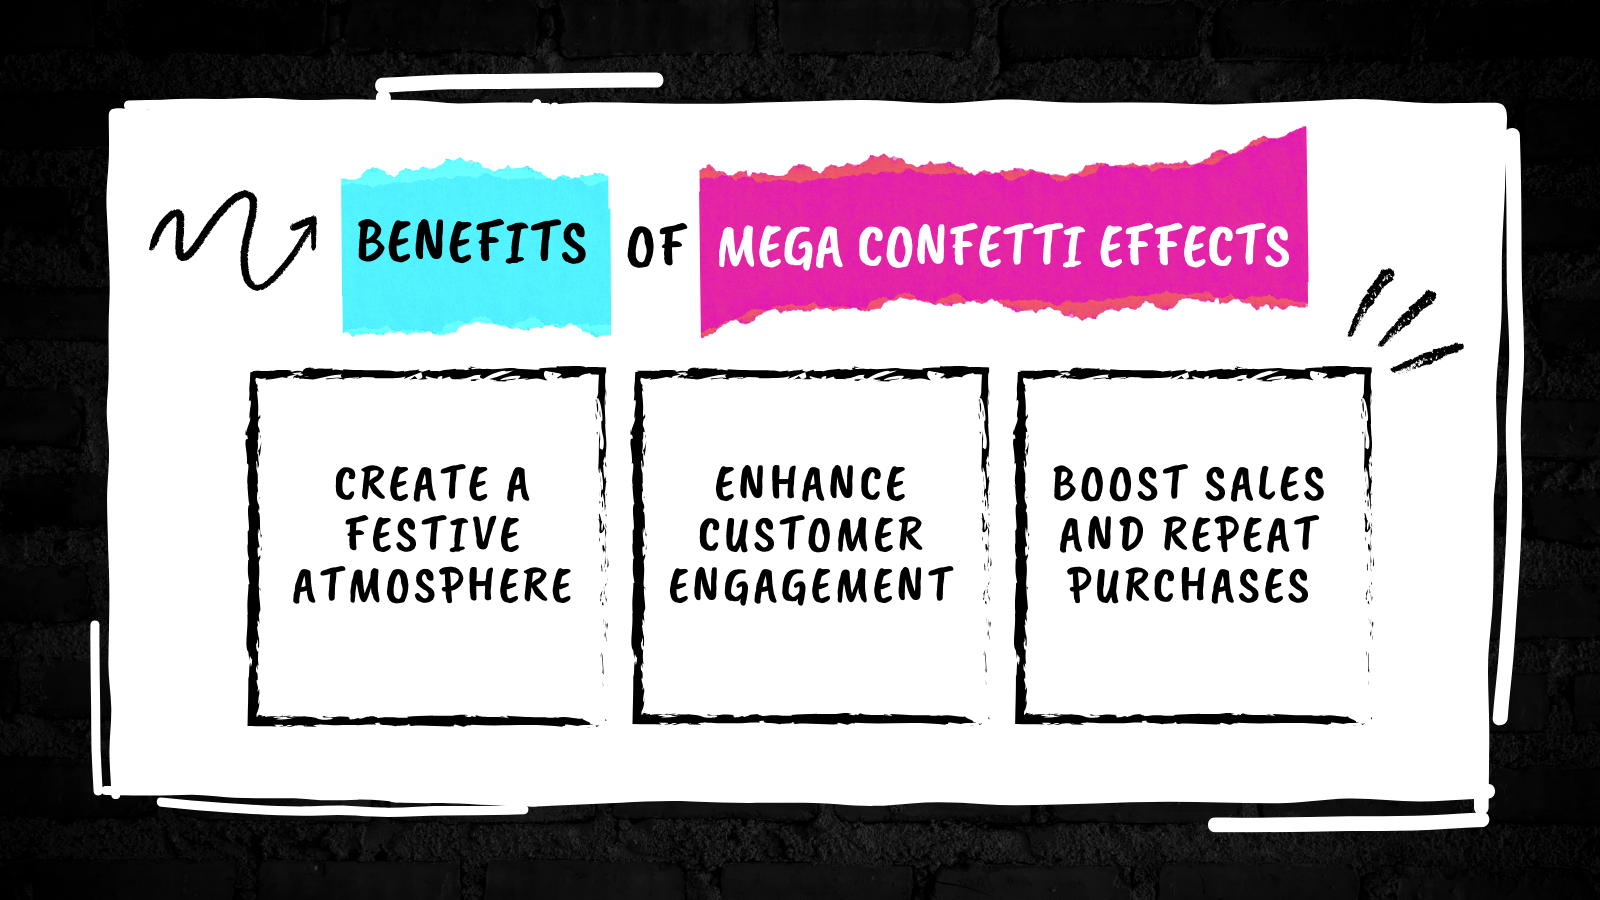 Mega Confetti Effects - Schaffen Sie eine festliche Atmosphäre